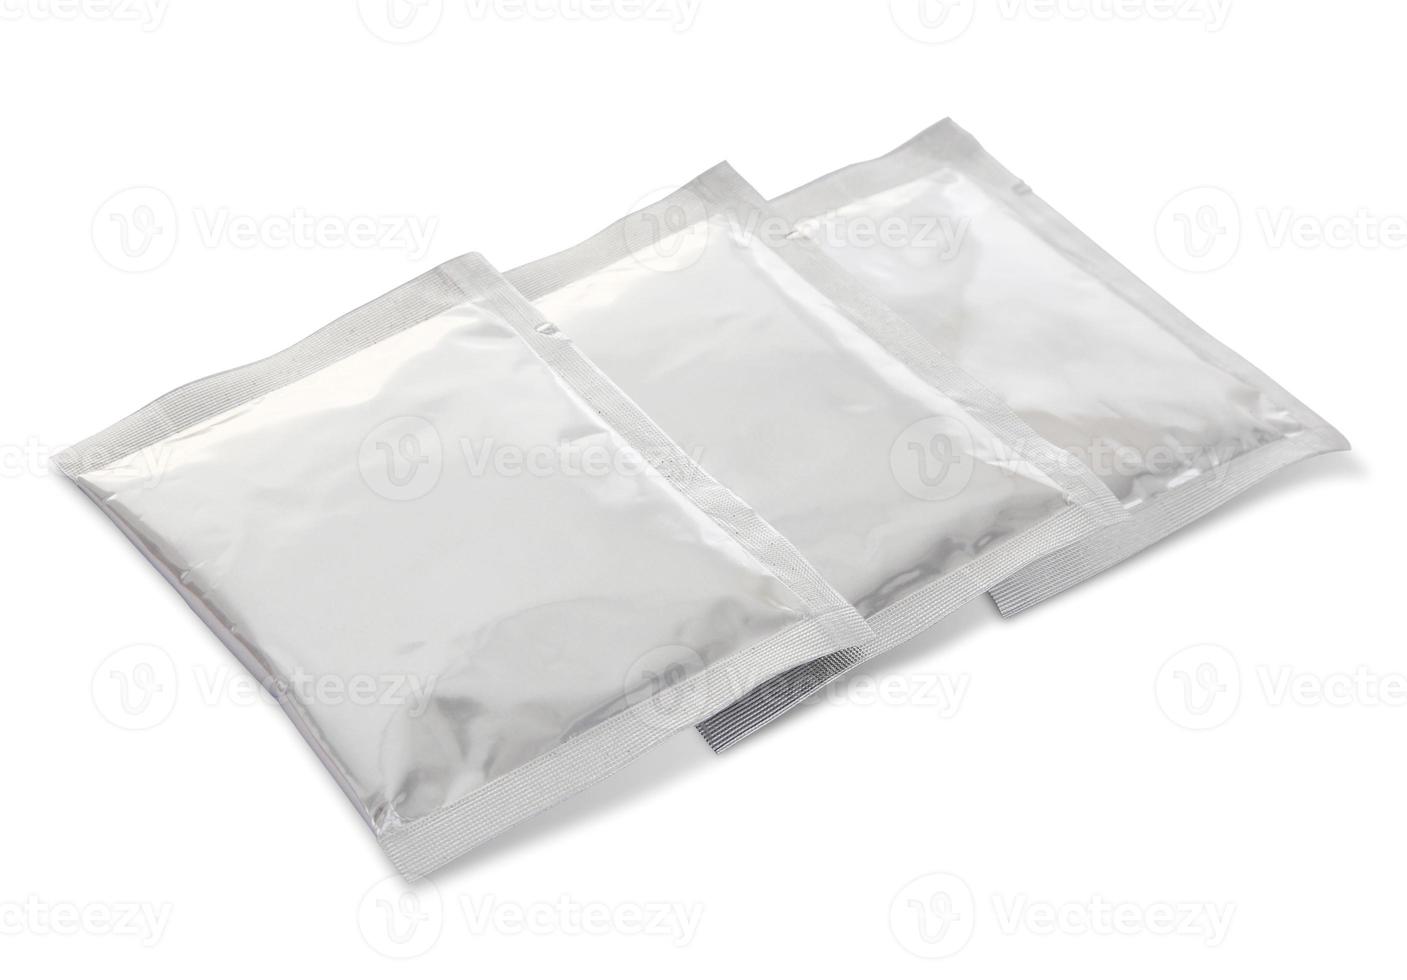 Plastikverpackungsbeutel lokalisiert auf Weiß mit Beschneidungspfad foto